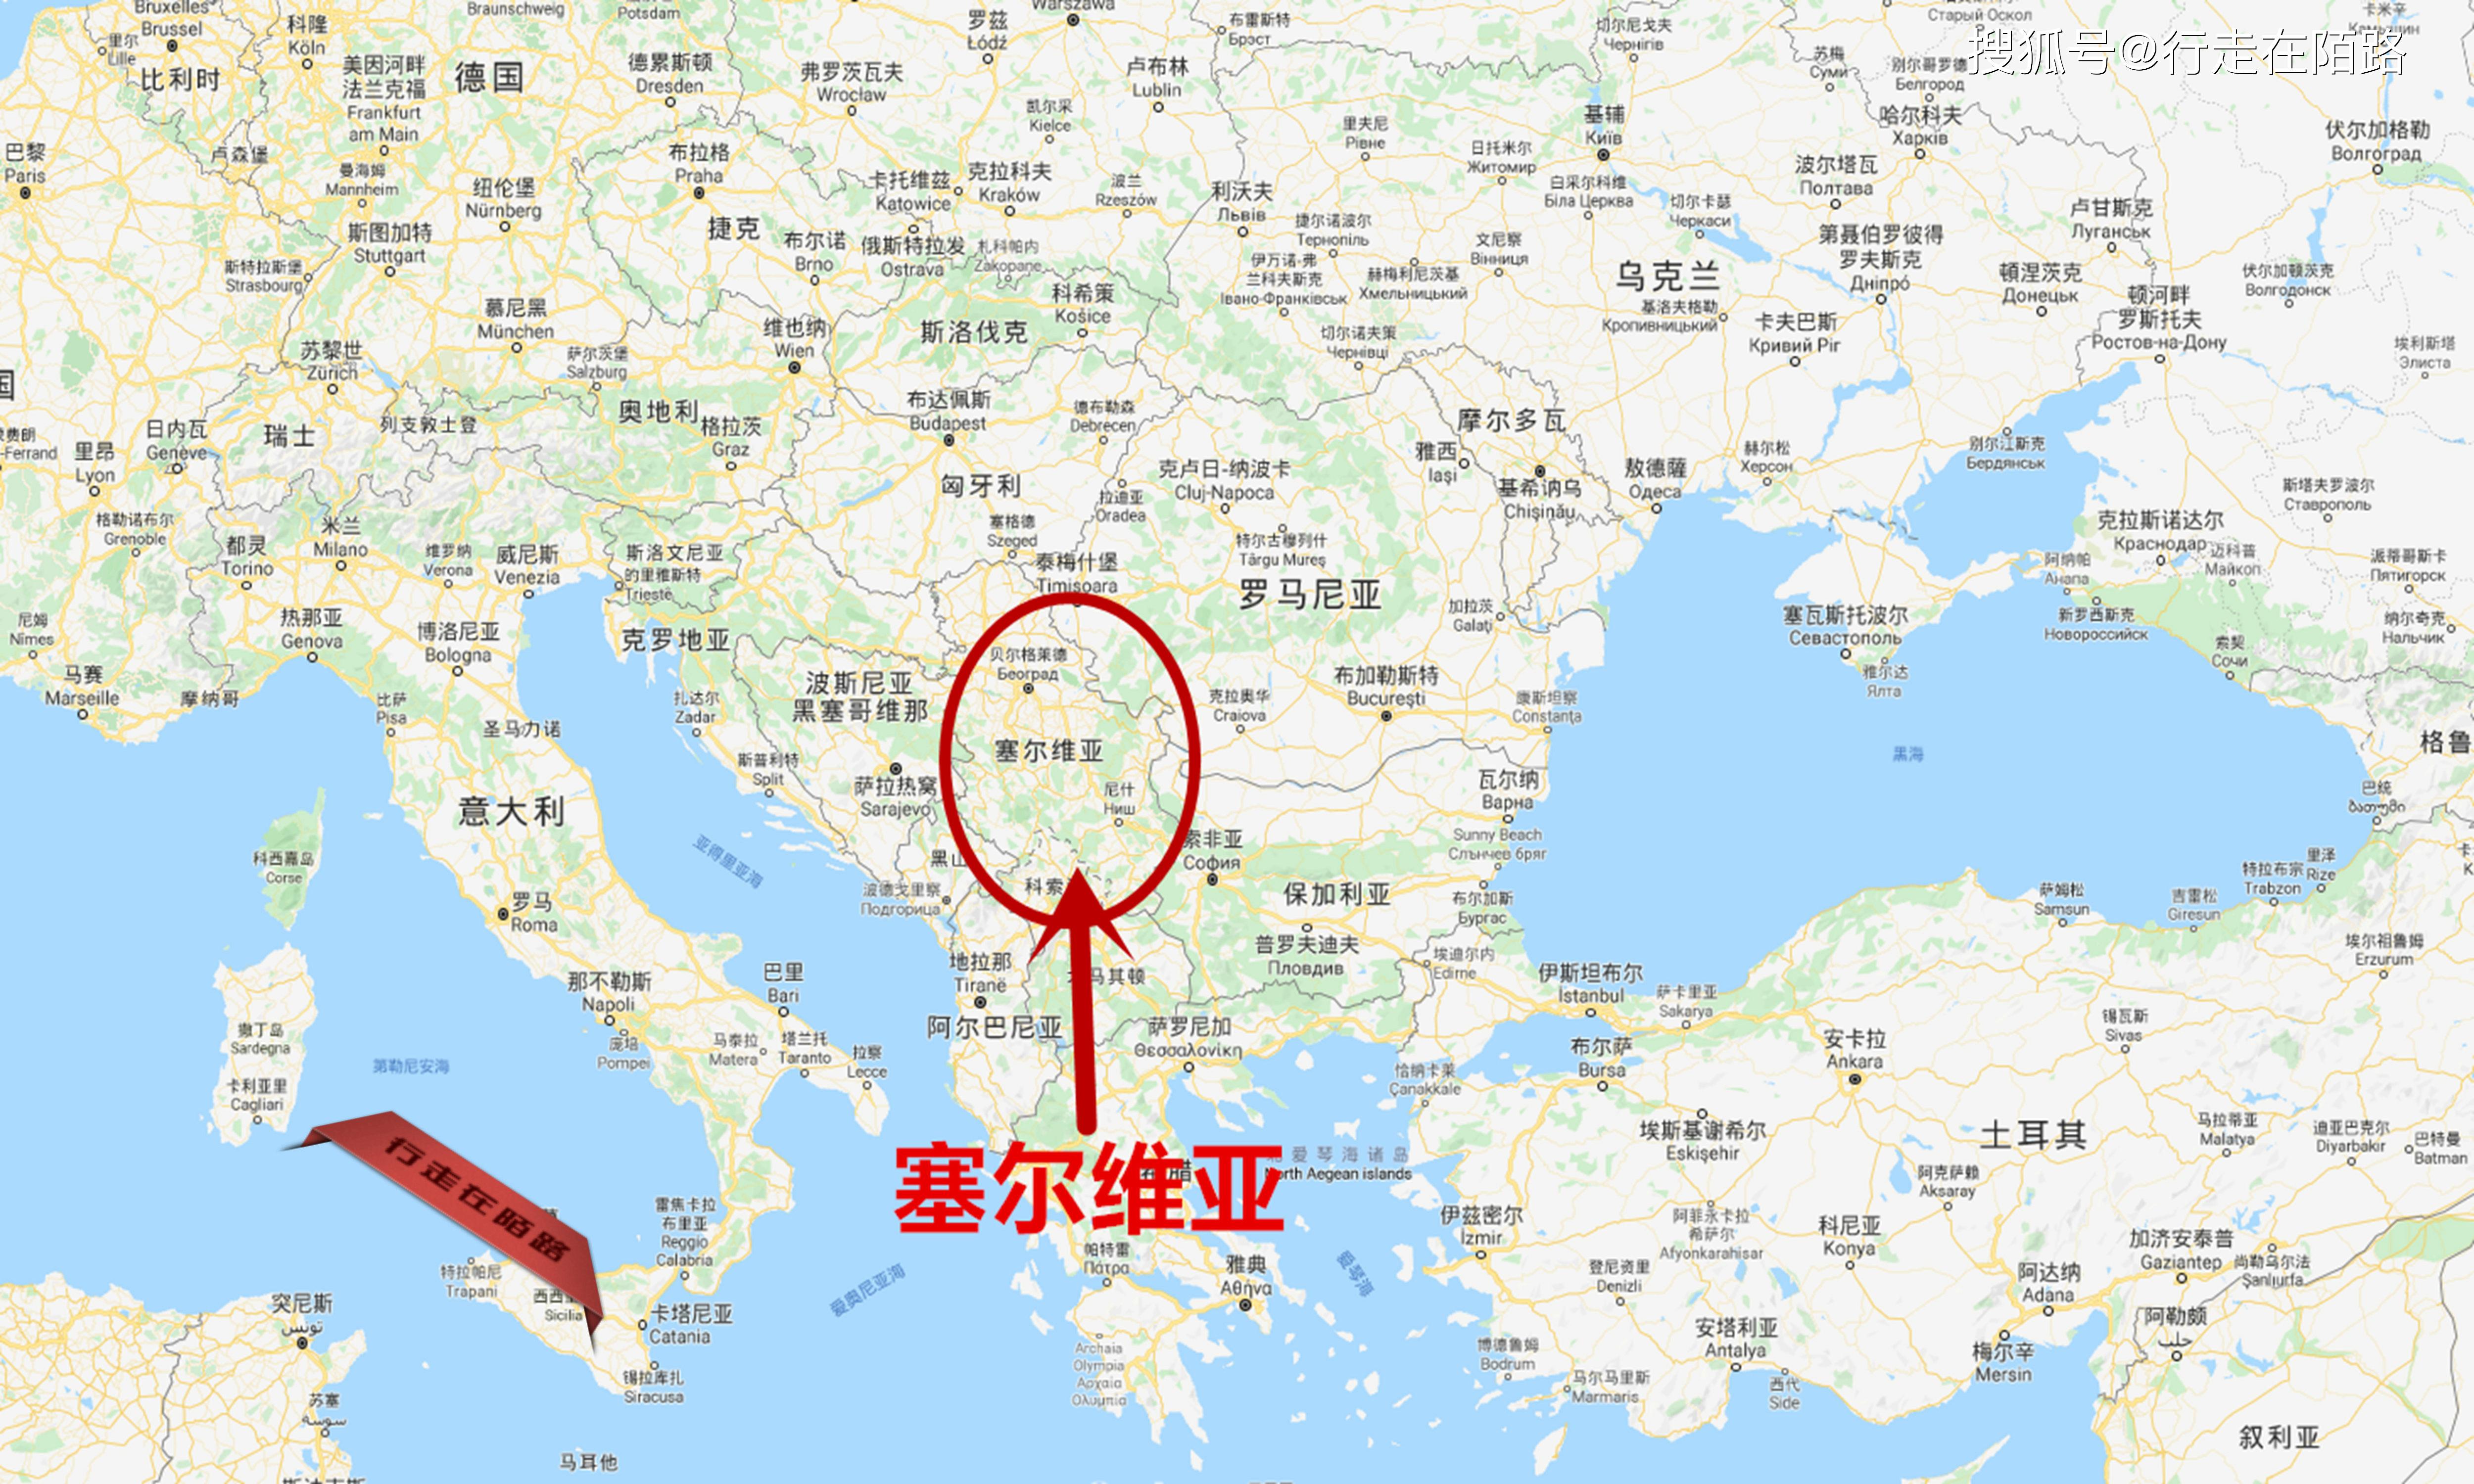 塞尔维亚:50元管饱200元住套房,上街还有中国警察保护